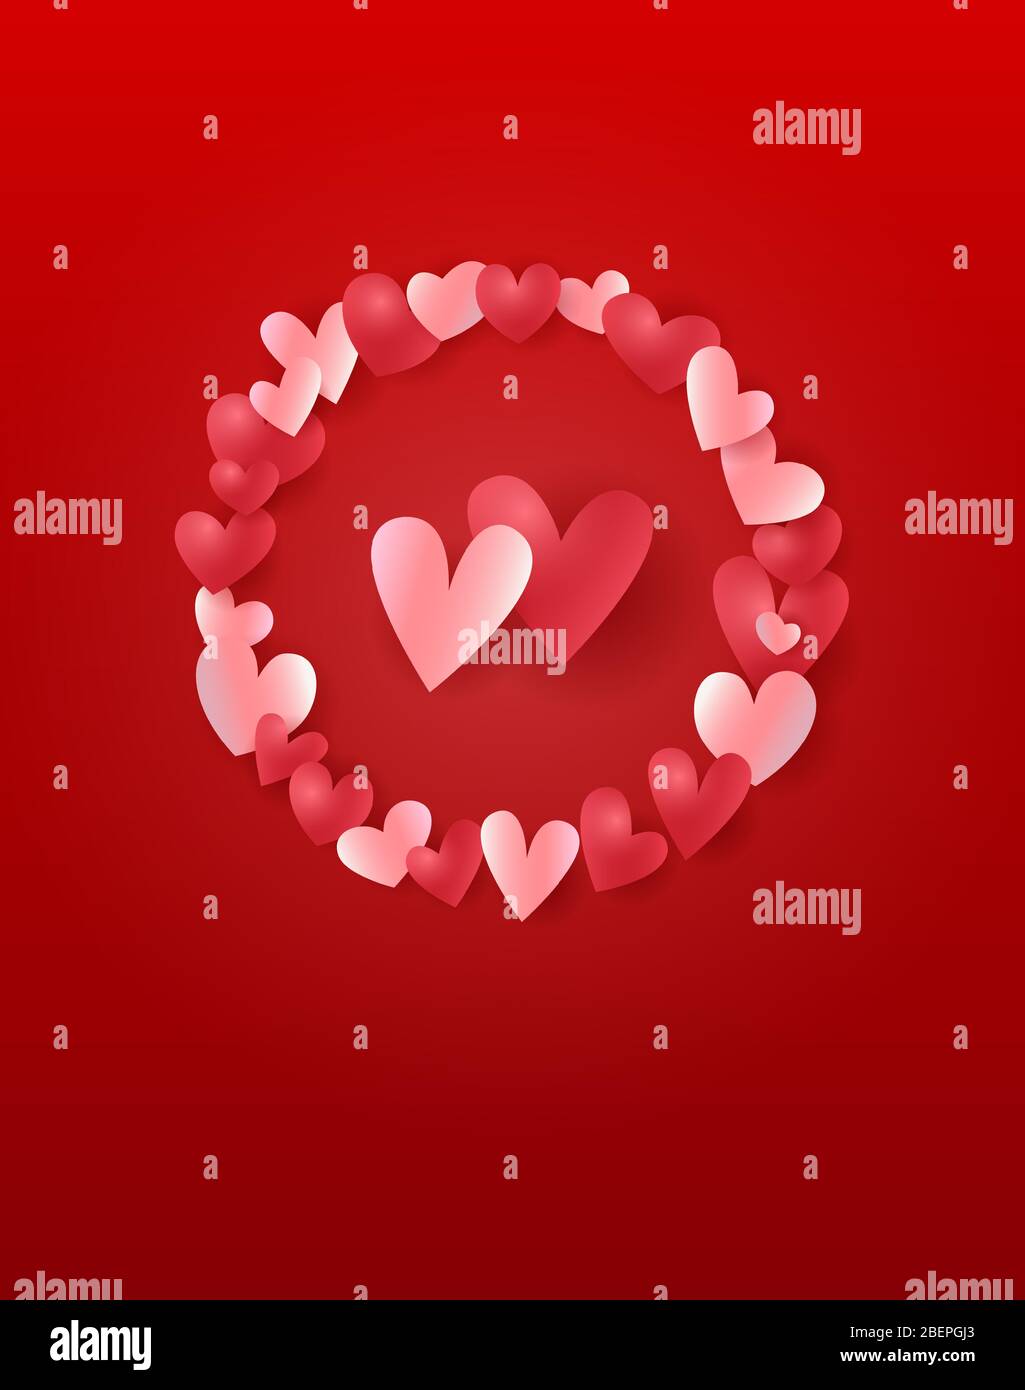 Valentinstags-Grußkarte, Vektorvorlage für Hochzeitstag oder Hochzeitseinladung mit Kopierfläche oben und unten. Stock Vektor